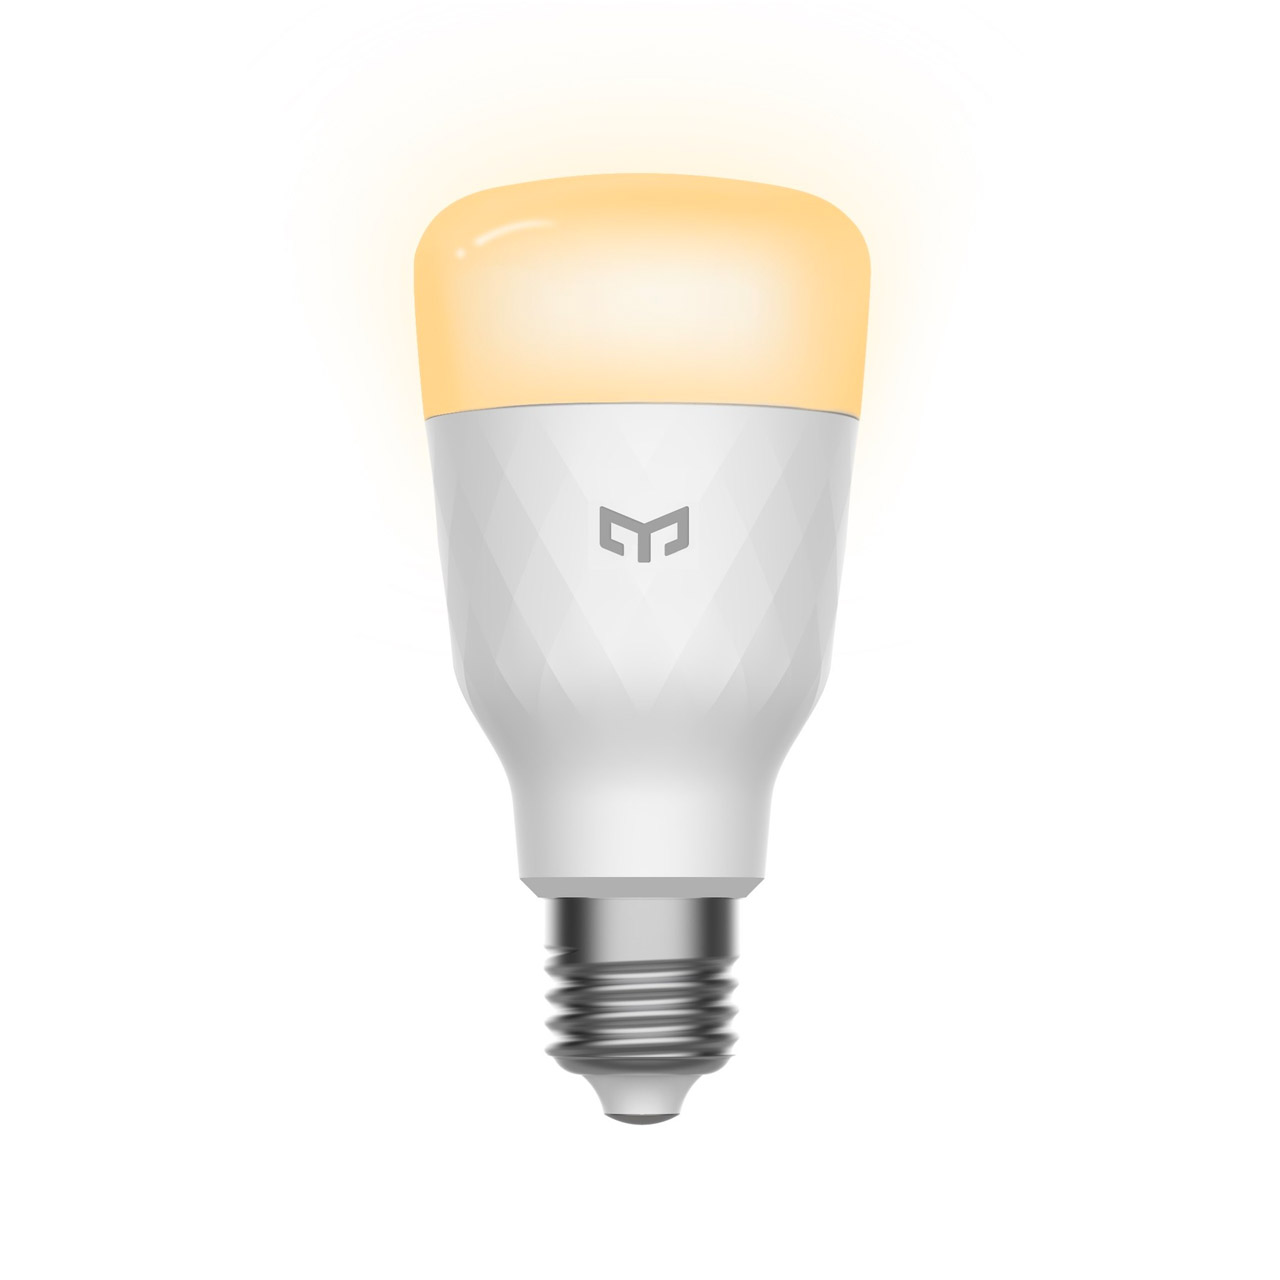 Yeelight Smart LED Bulb 1S (White)